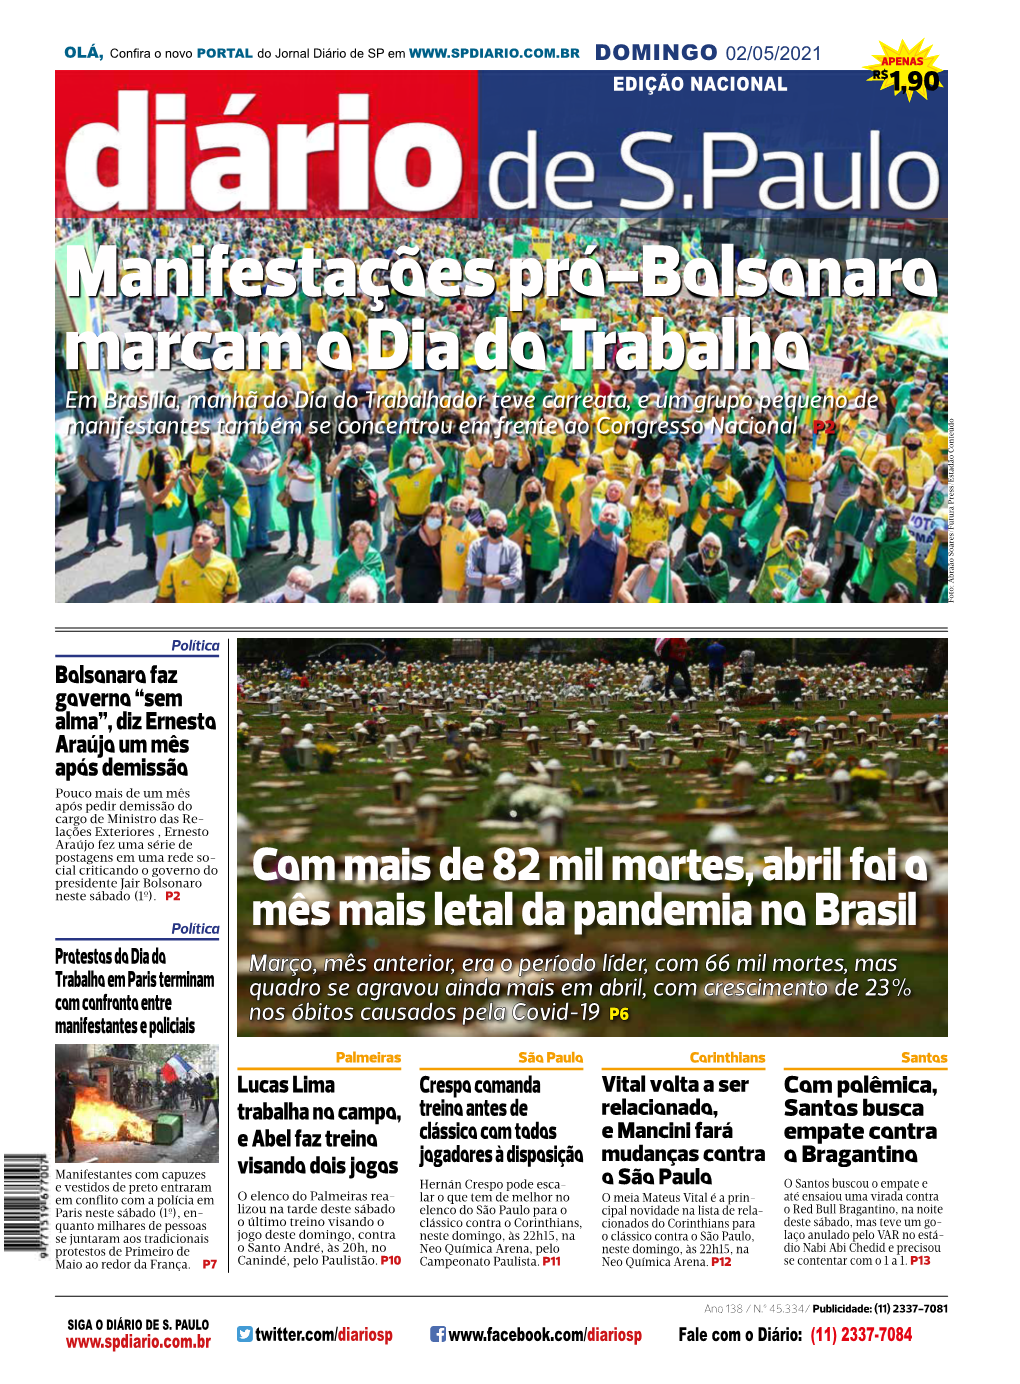 Manifestações Pró-Bolsonaro Marcam O Dia Do Trabalho